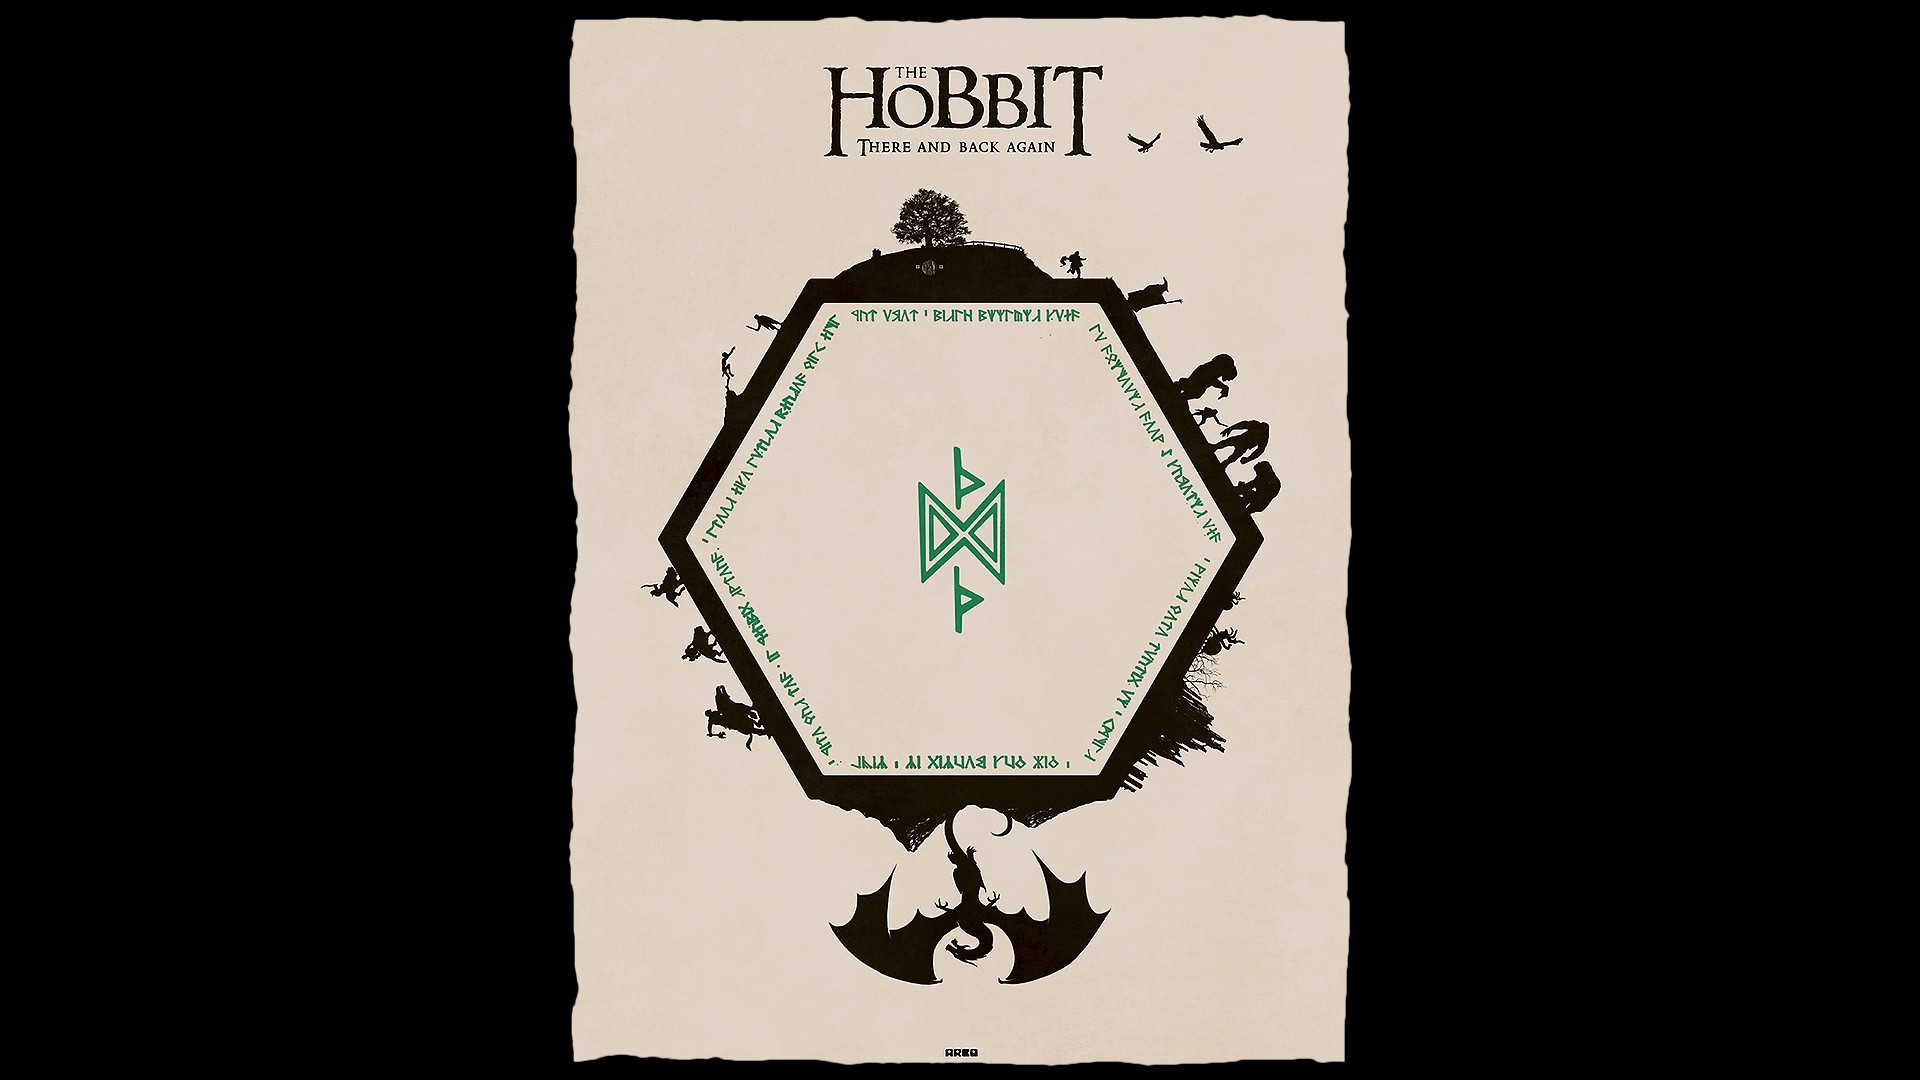 The Hobbit: An Unexpected Journey Computer Wallpapers, Desktop ...